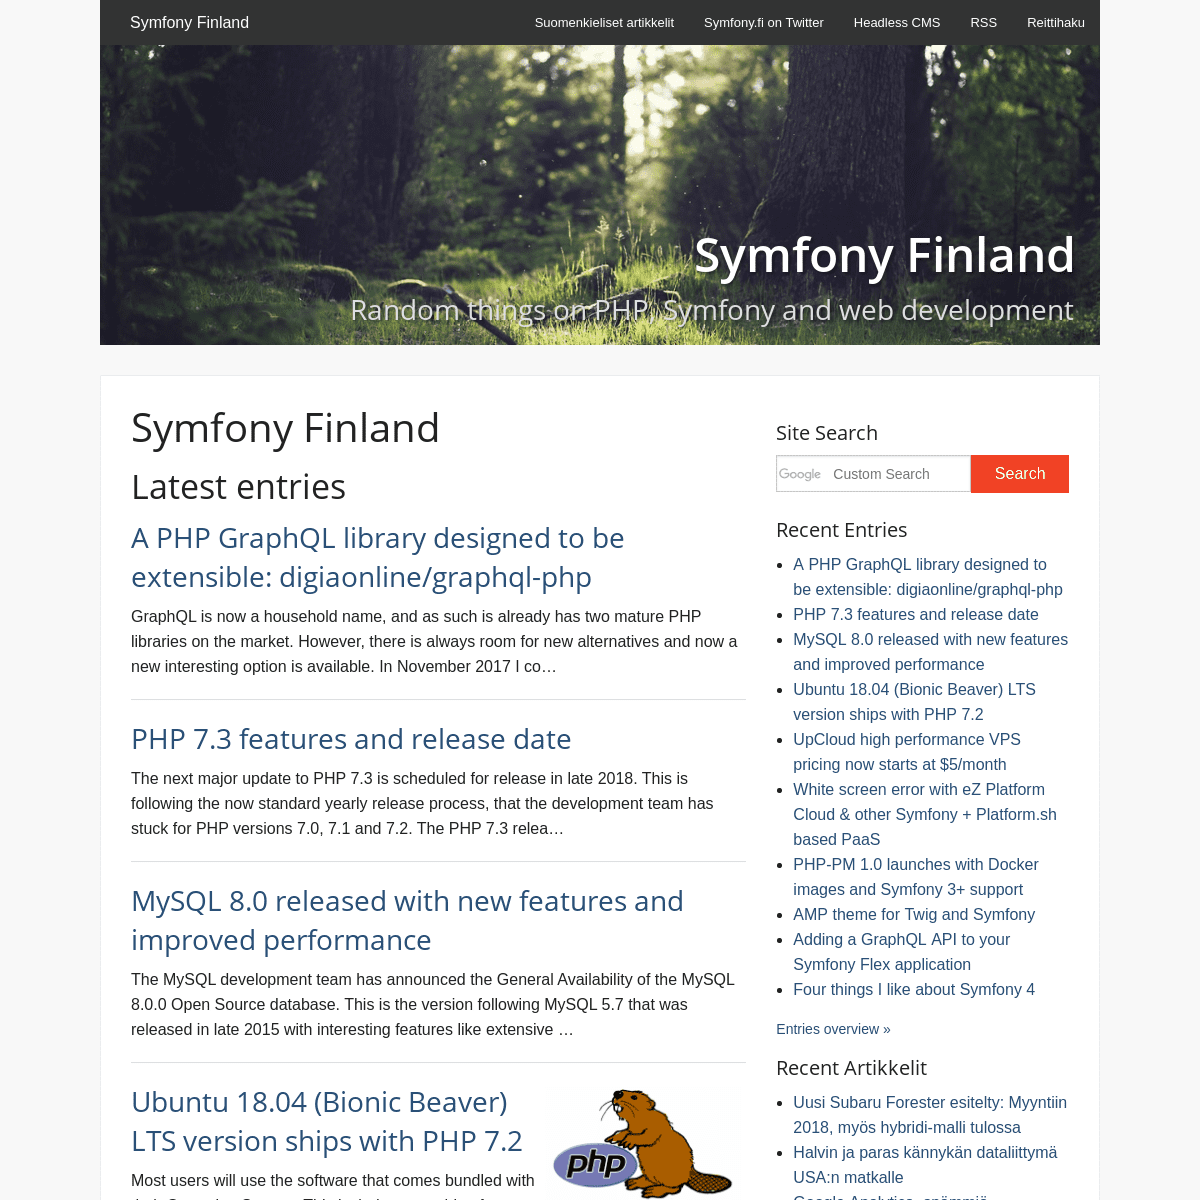 A complete backup of symfony.fi